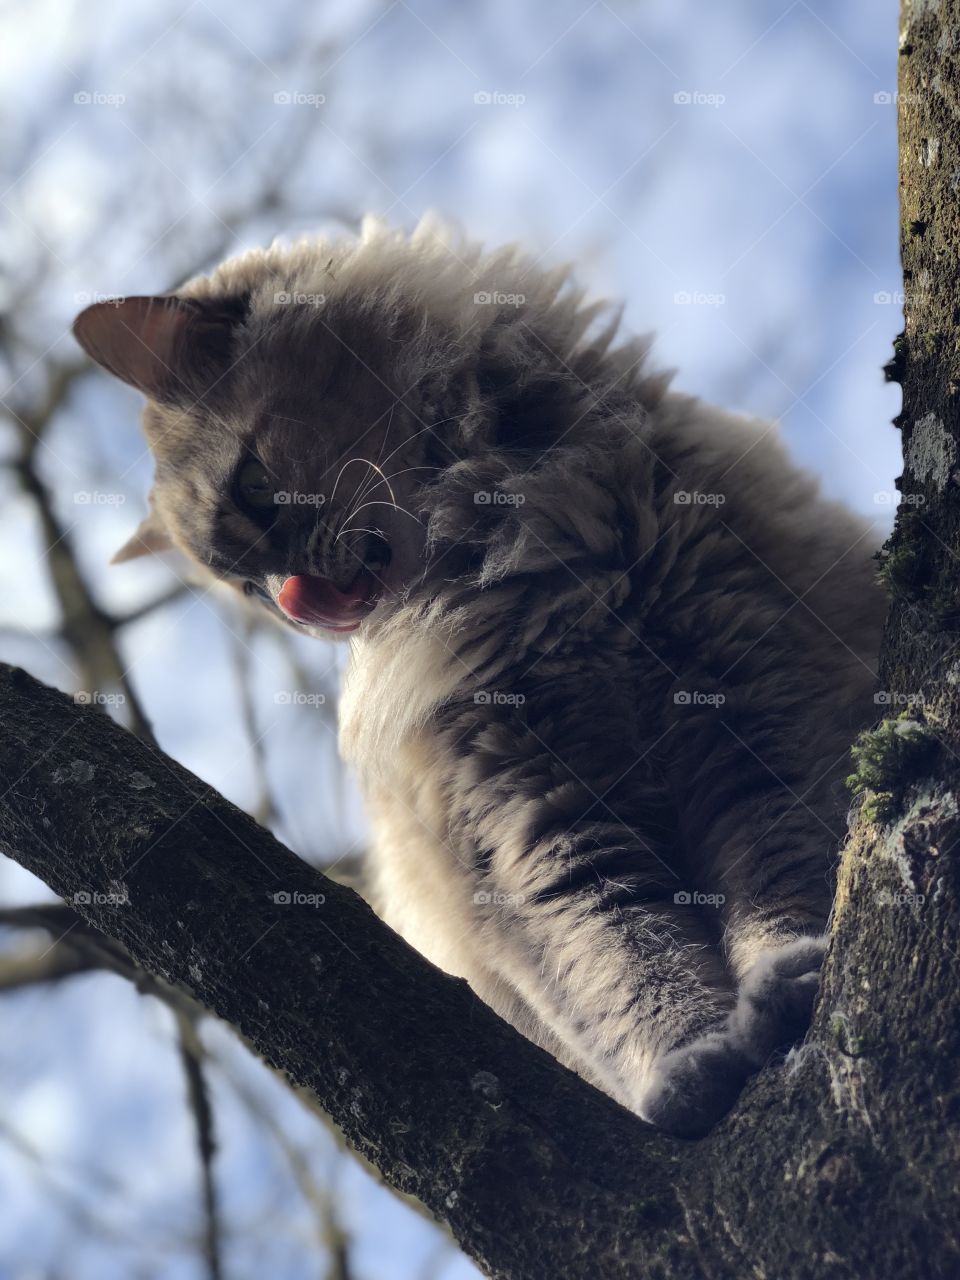 Tree climber 